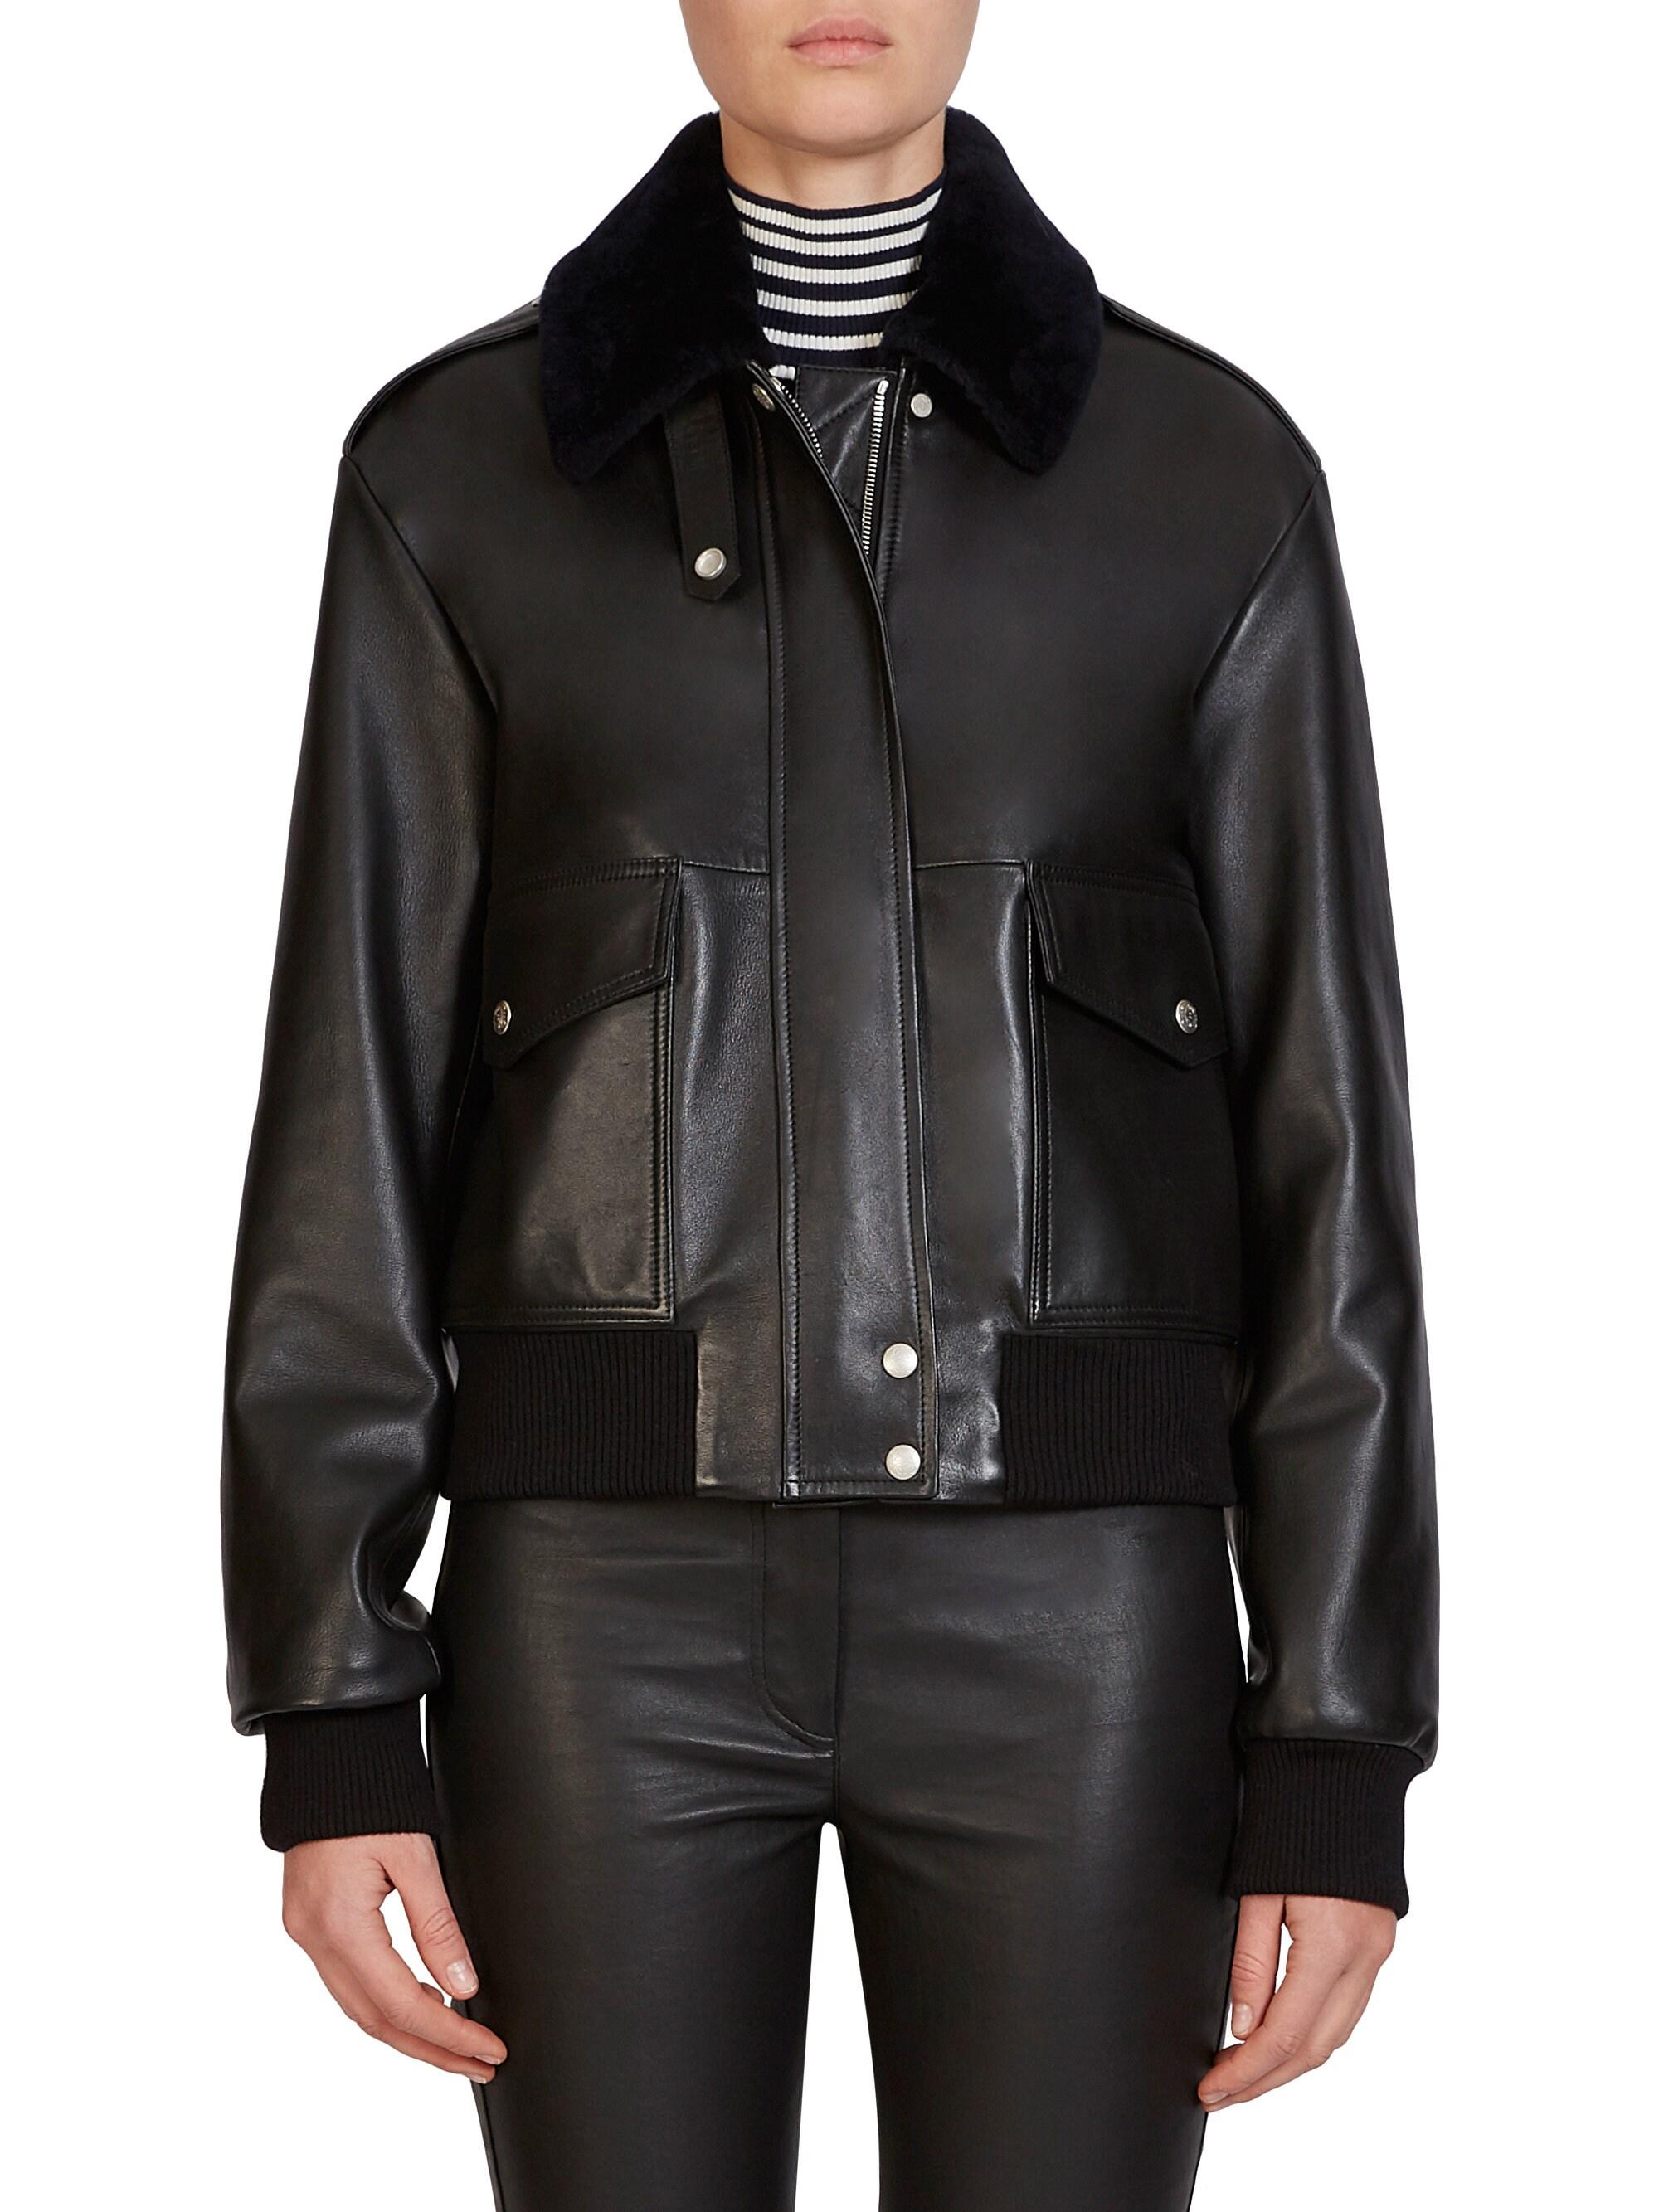 Loewe Leather Aviator Jacket in Black - Lyst